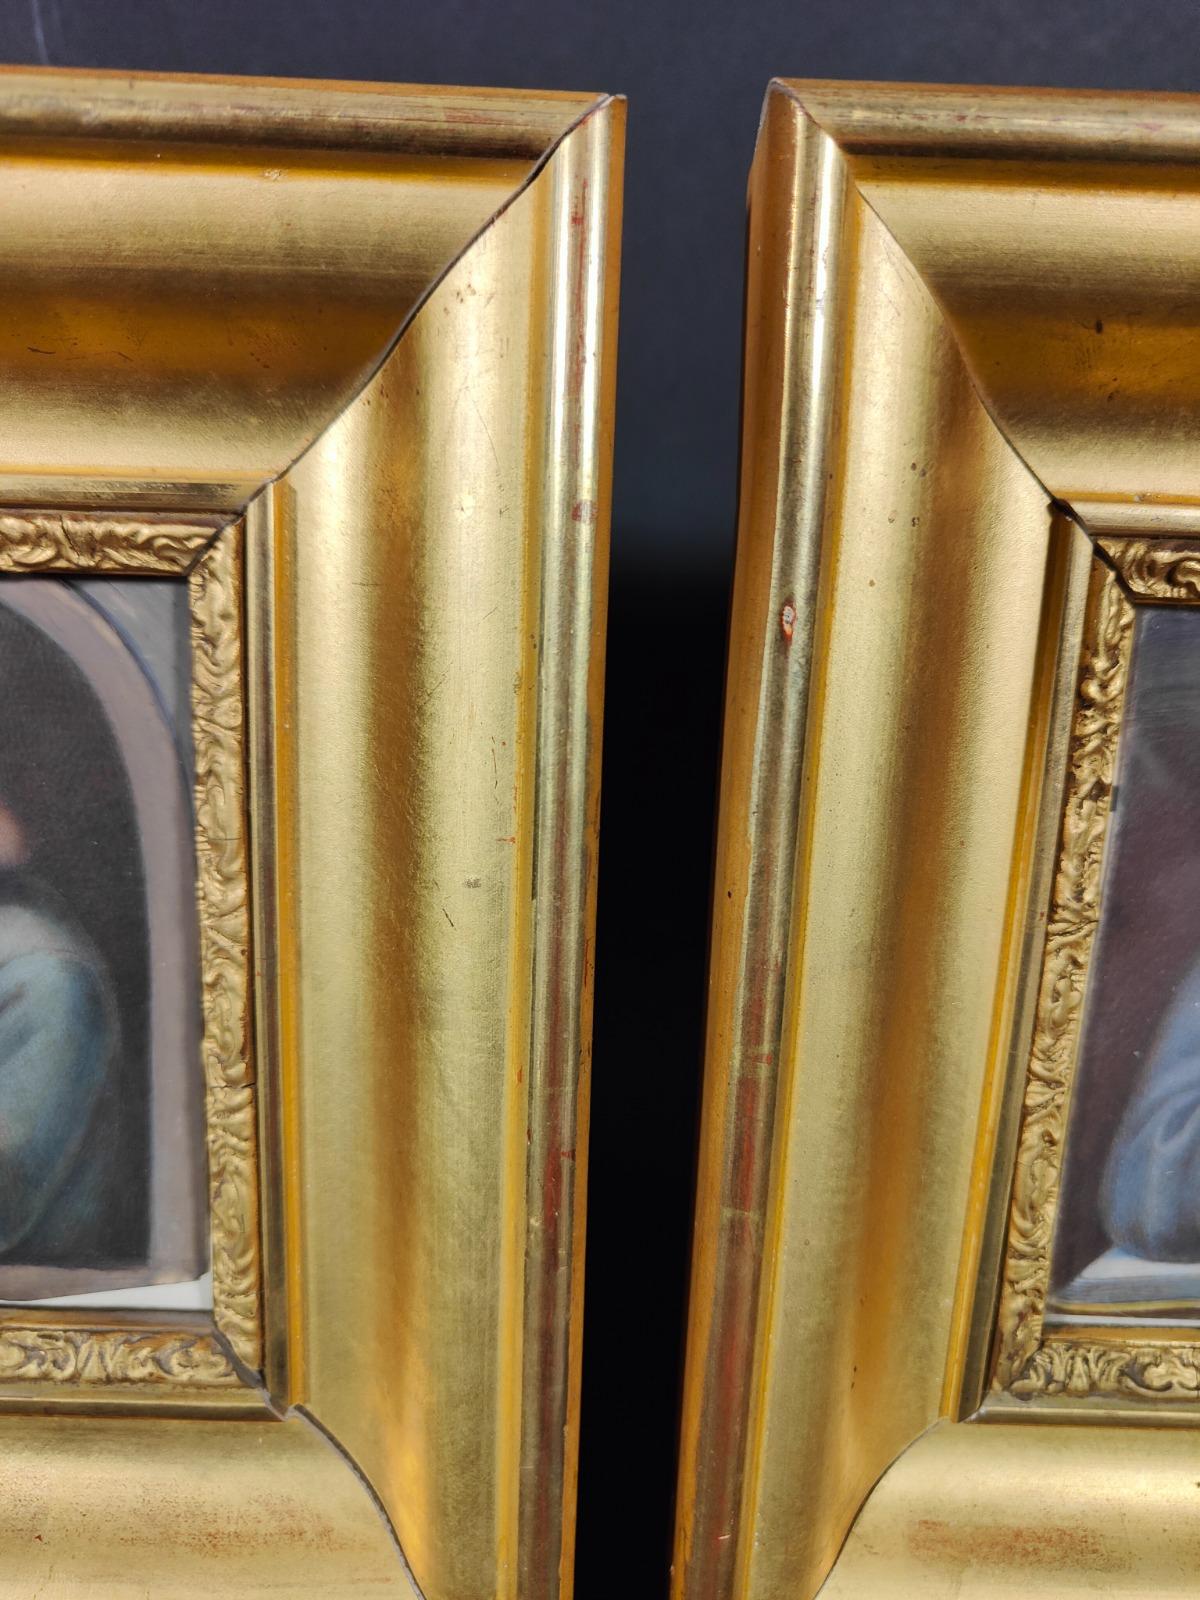 Paire de portraits sur ivoire. Anciens portraits renascentistes sur plaque d'ivoire avec cadre en bois doré. Chacune mesure : 21x21 et 11x11 cm.
Bon état.